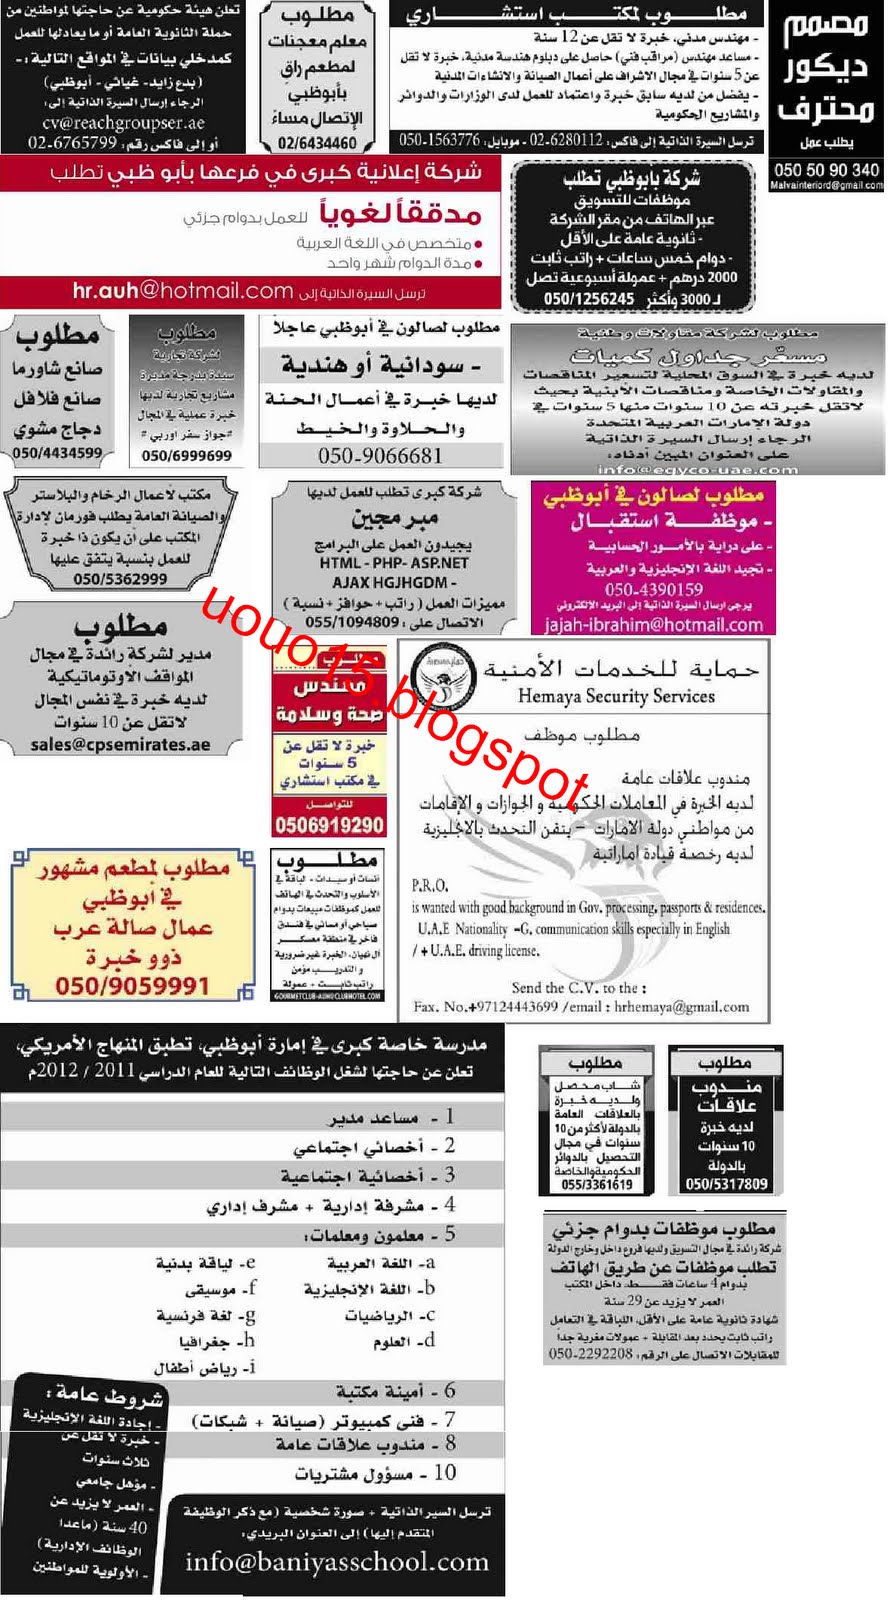 وظائف الامارات - وظائف جريدة الوسيط ابوظبى 14 مايو 2011 4